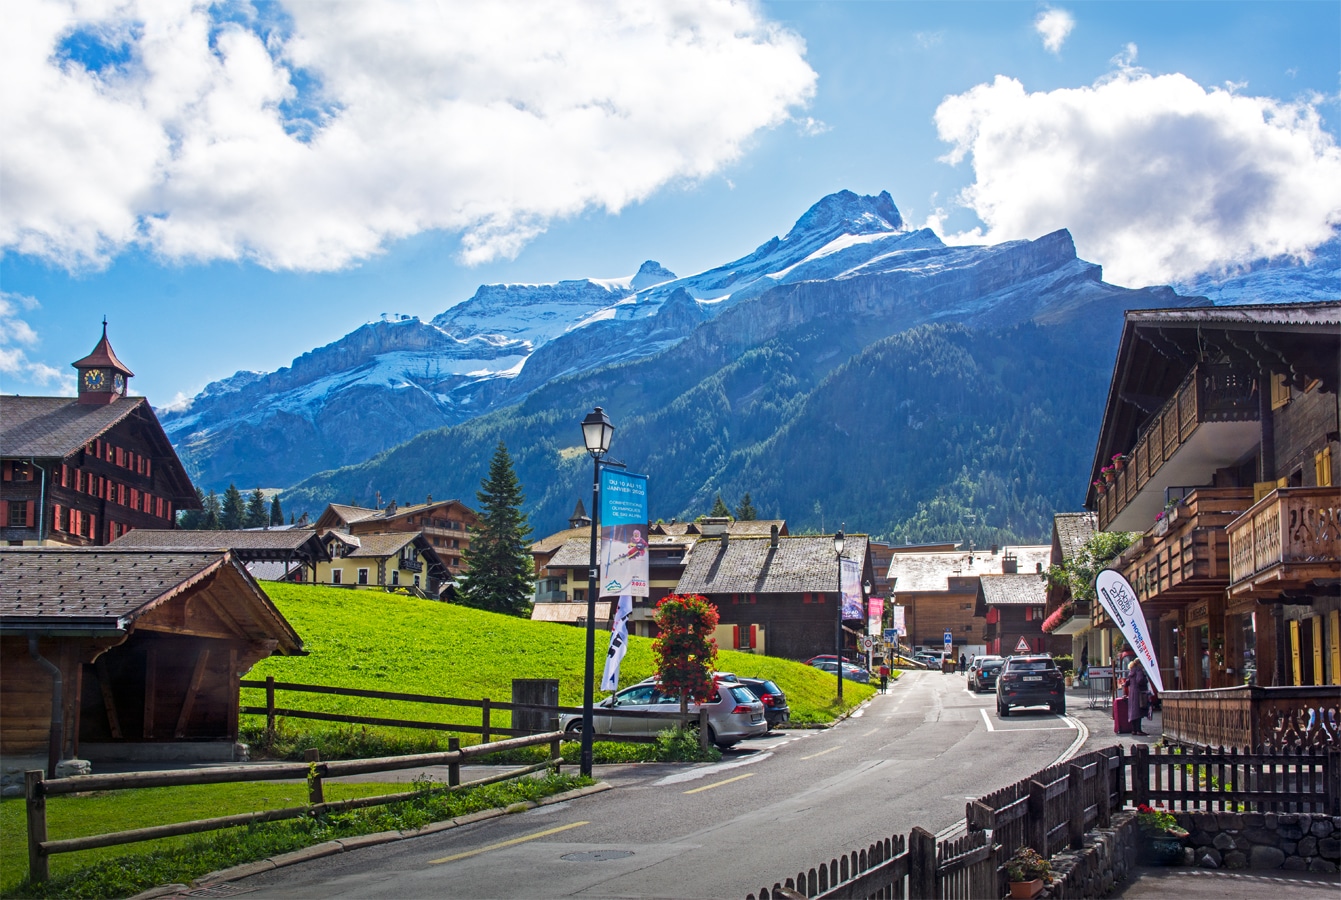 Scex Rouge - Les Diablerets, typická alpská vesnice